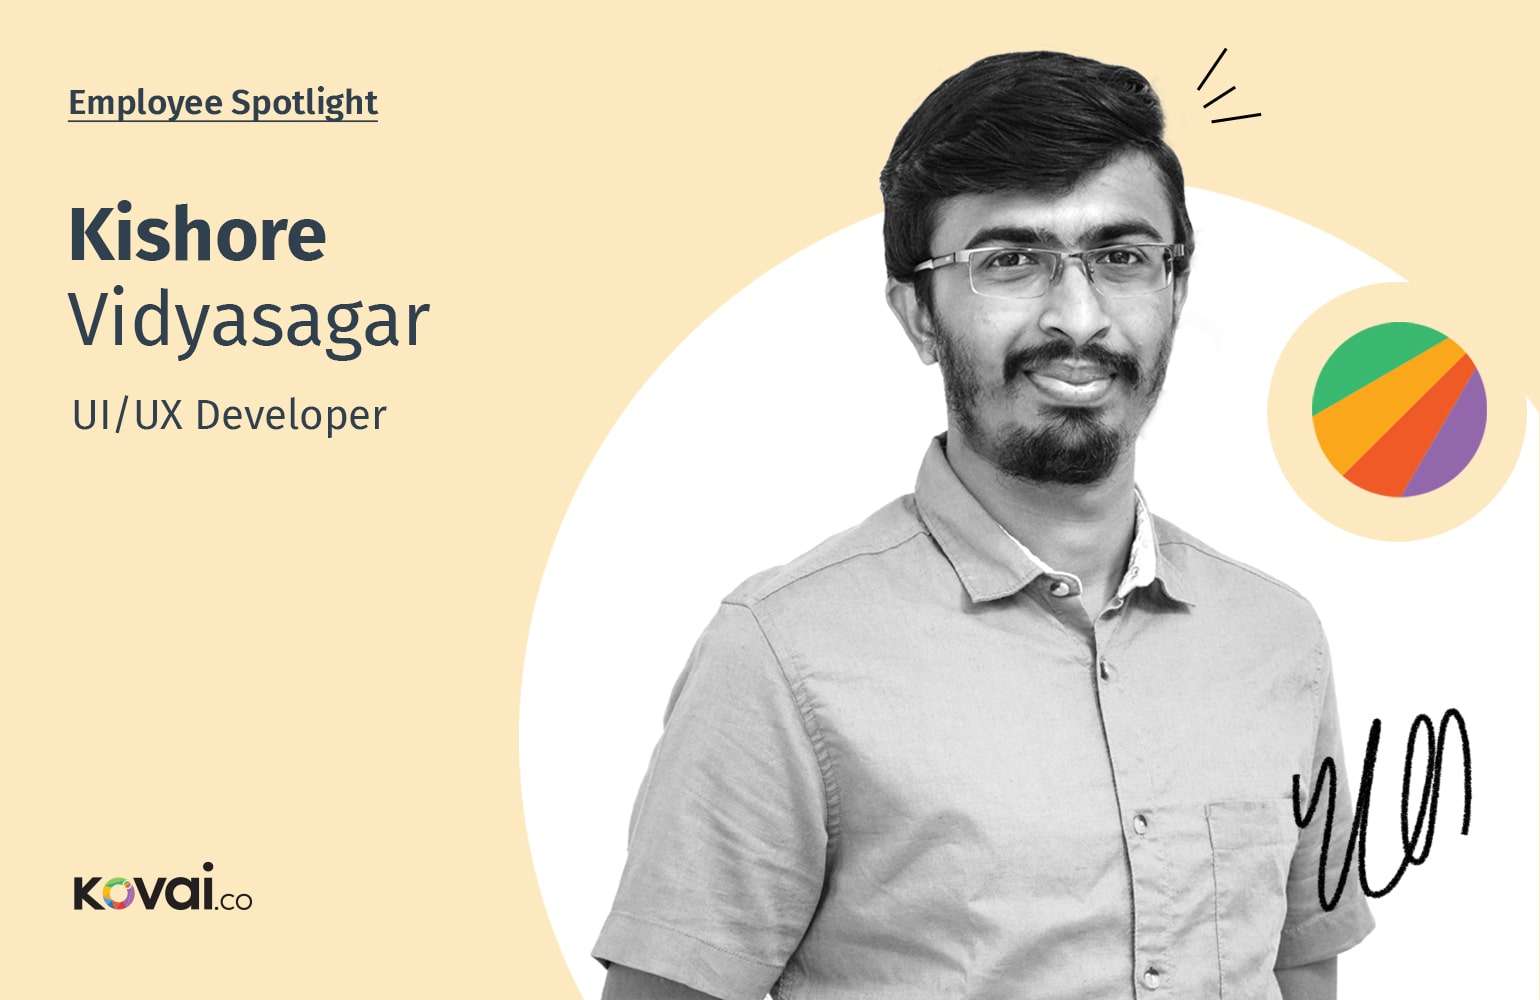 Employee Spotlight: Kishore Vidyasagar